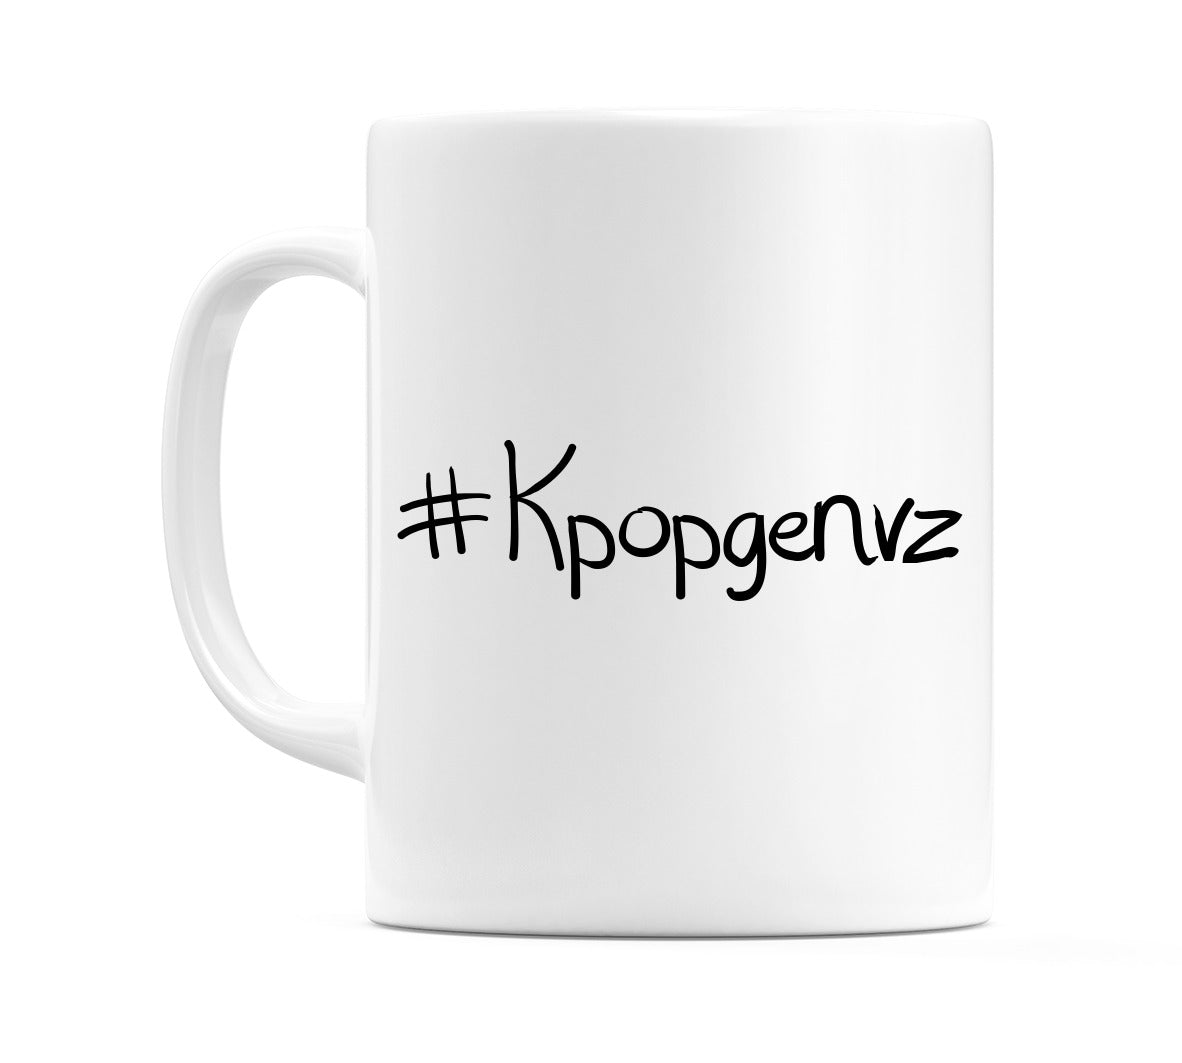 #Kpopgenvz Mug